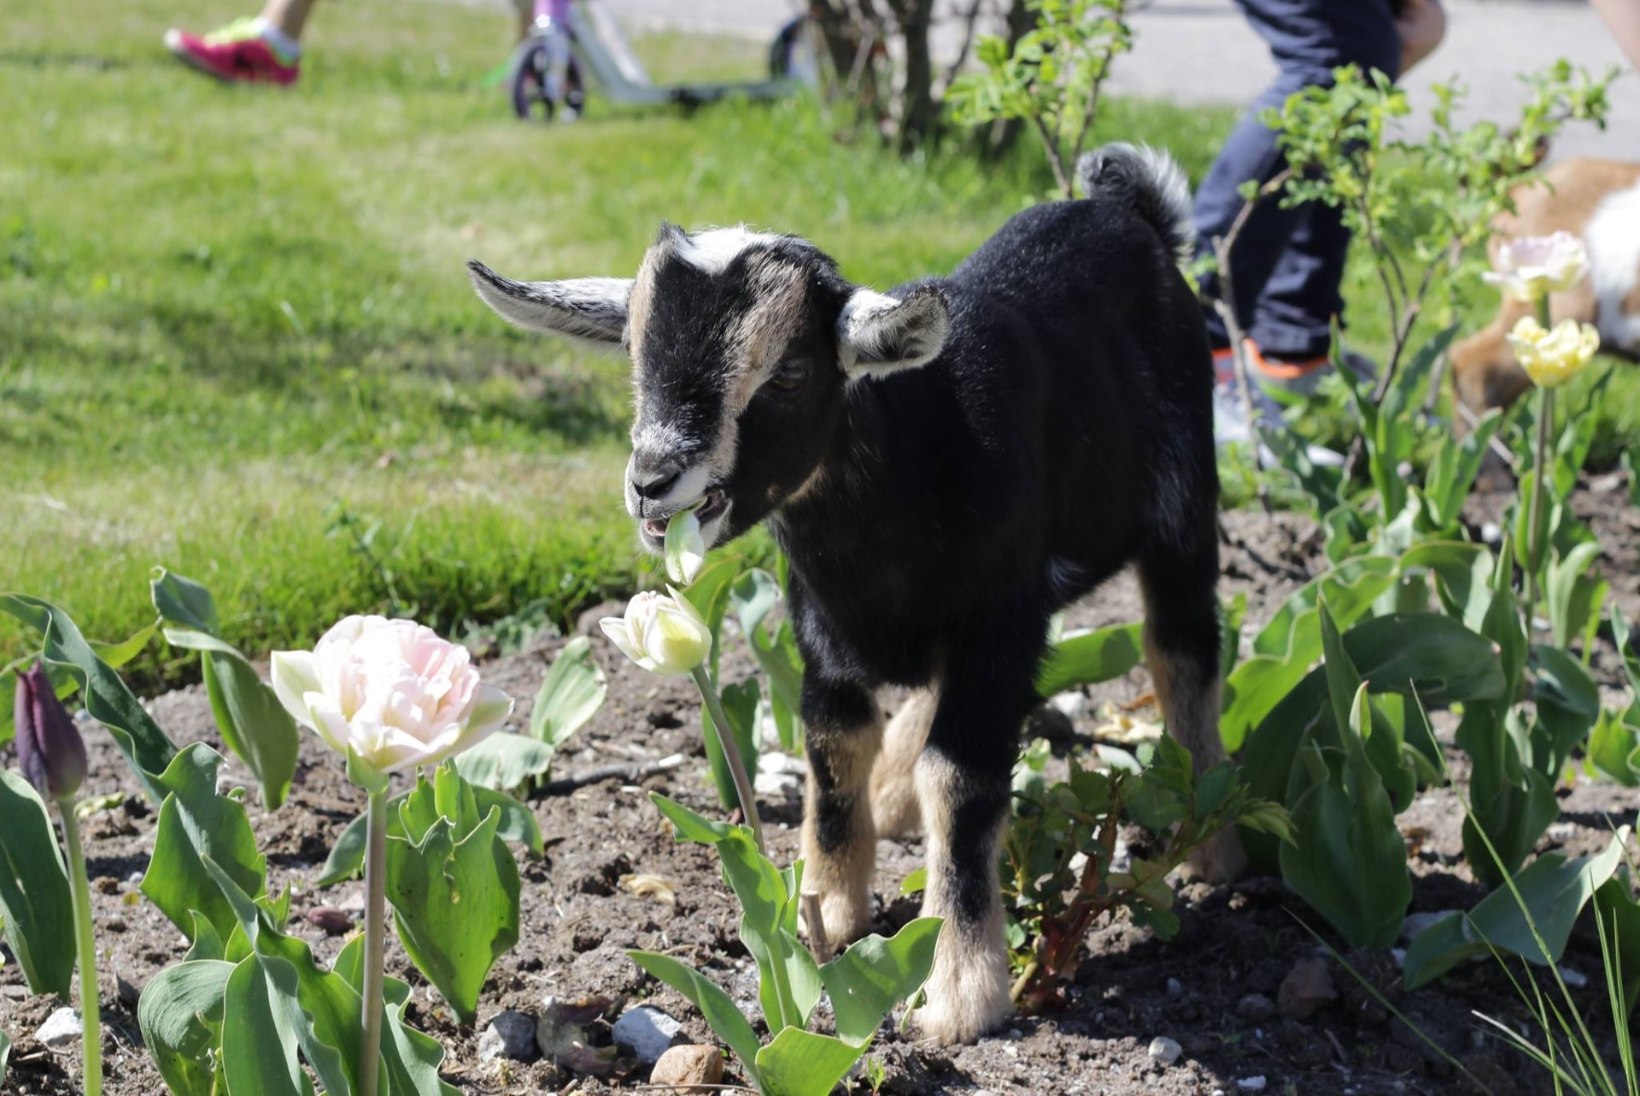 FOTOD | Loomaaias lasid kitsed aedikust jalga ja asusid lillepeenral maiustama